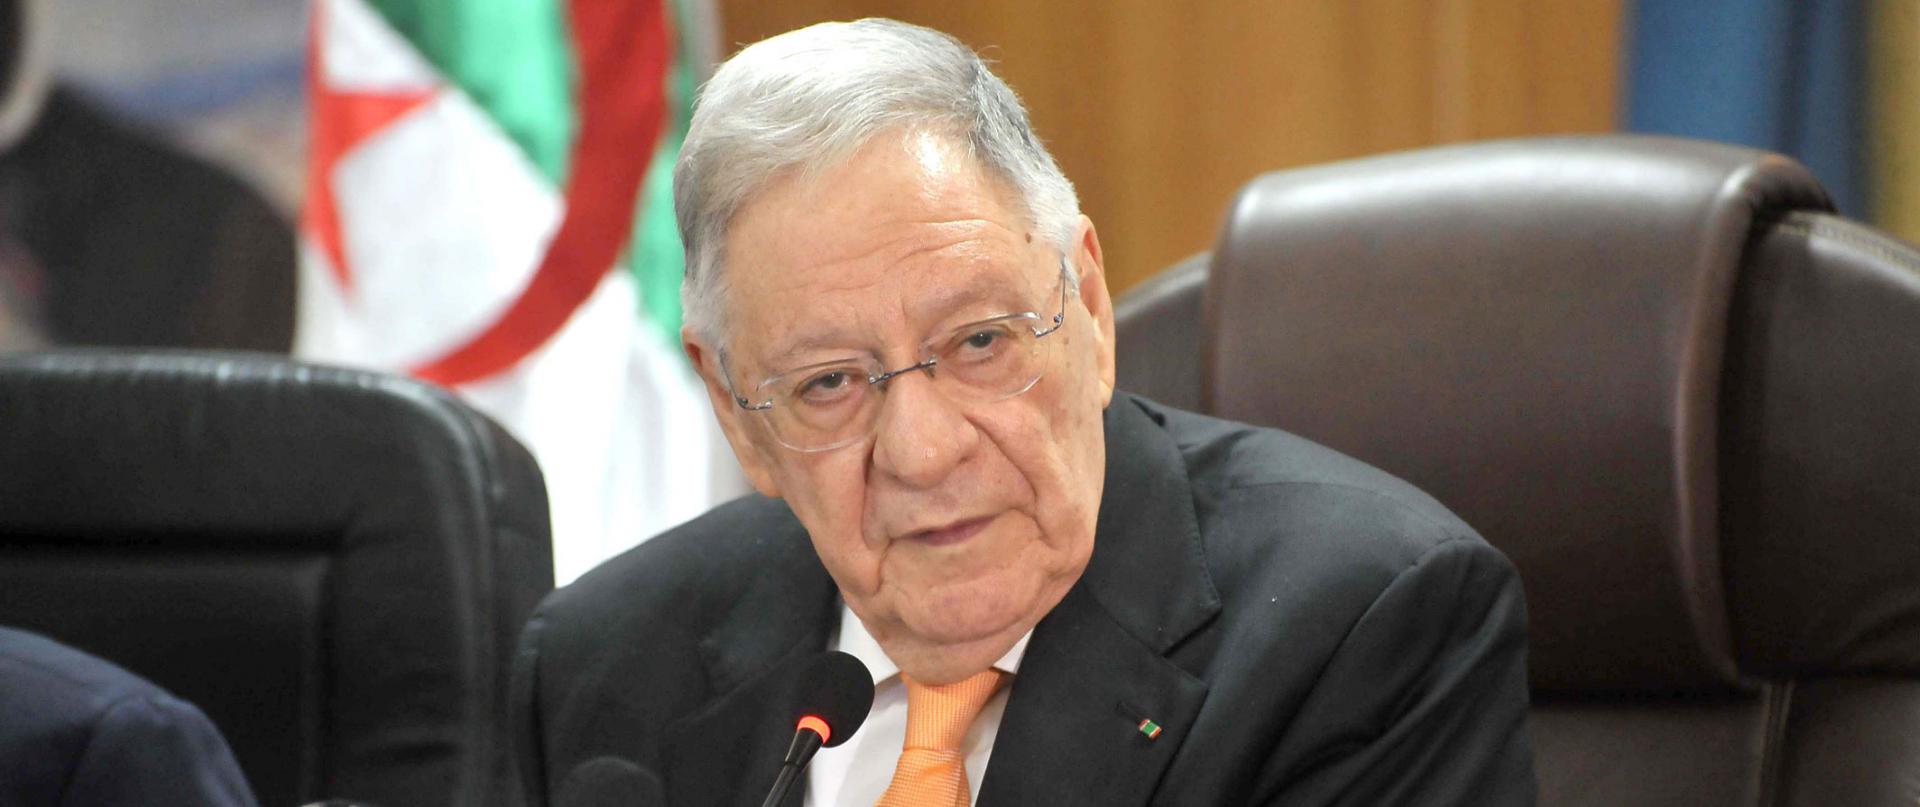 جمال ولد عباس أعلن ترشيح بوتفليقة لرئاسية 2019 ثم استقال